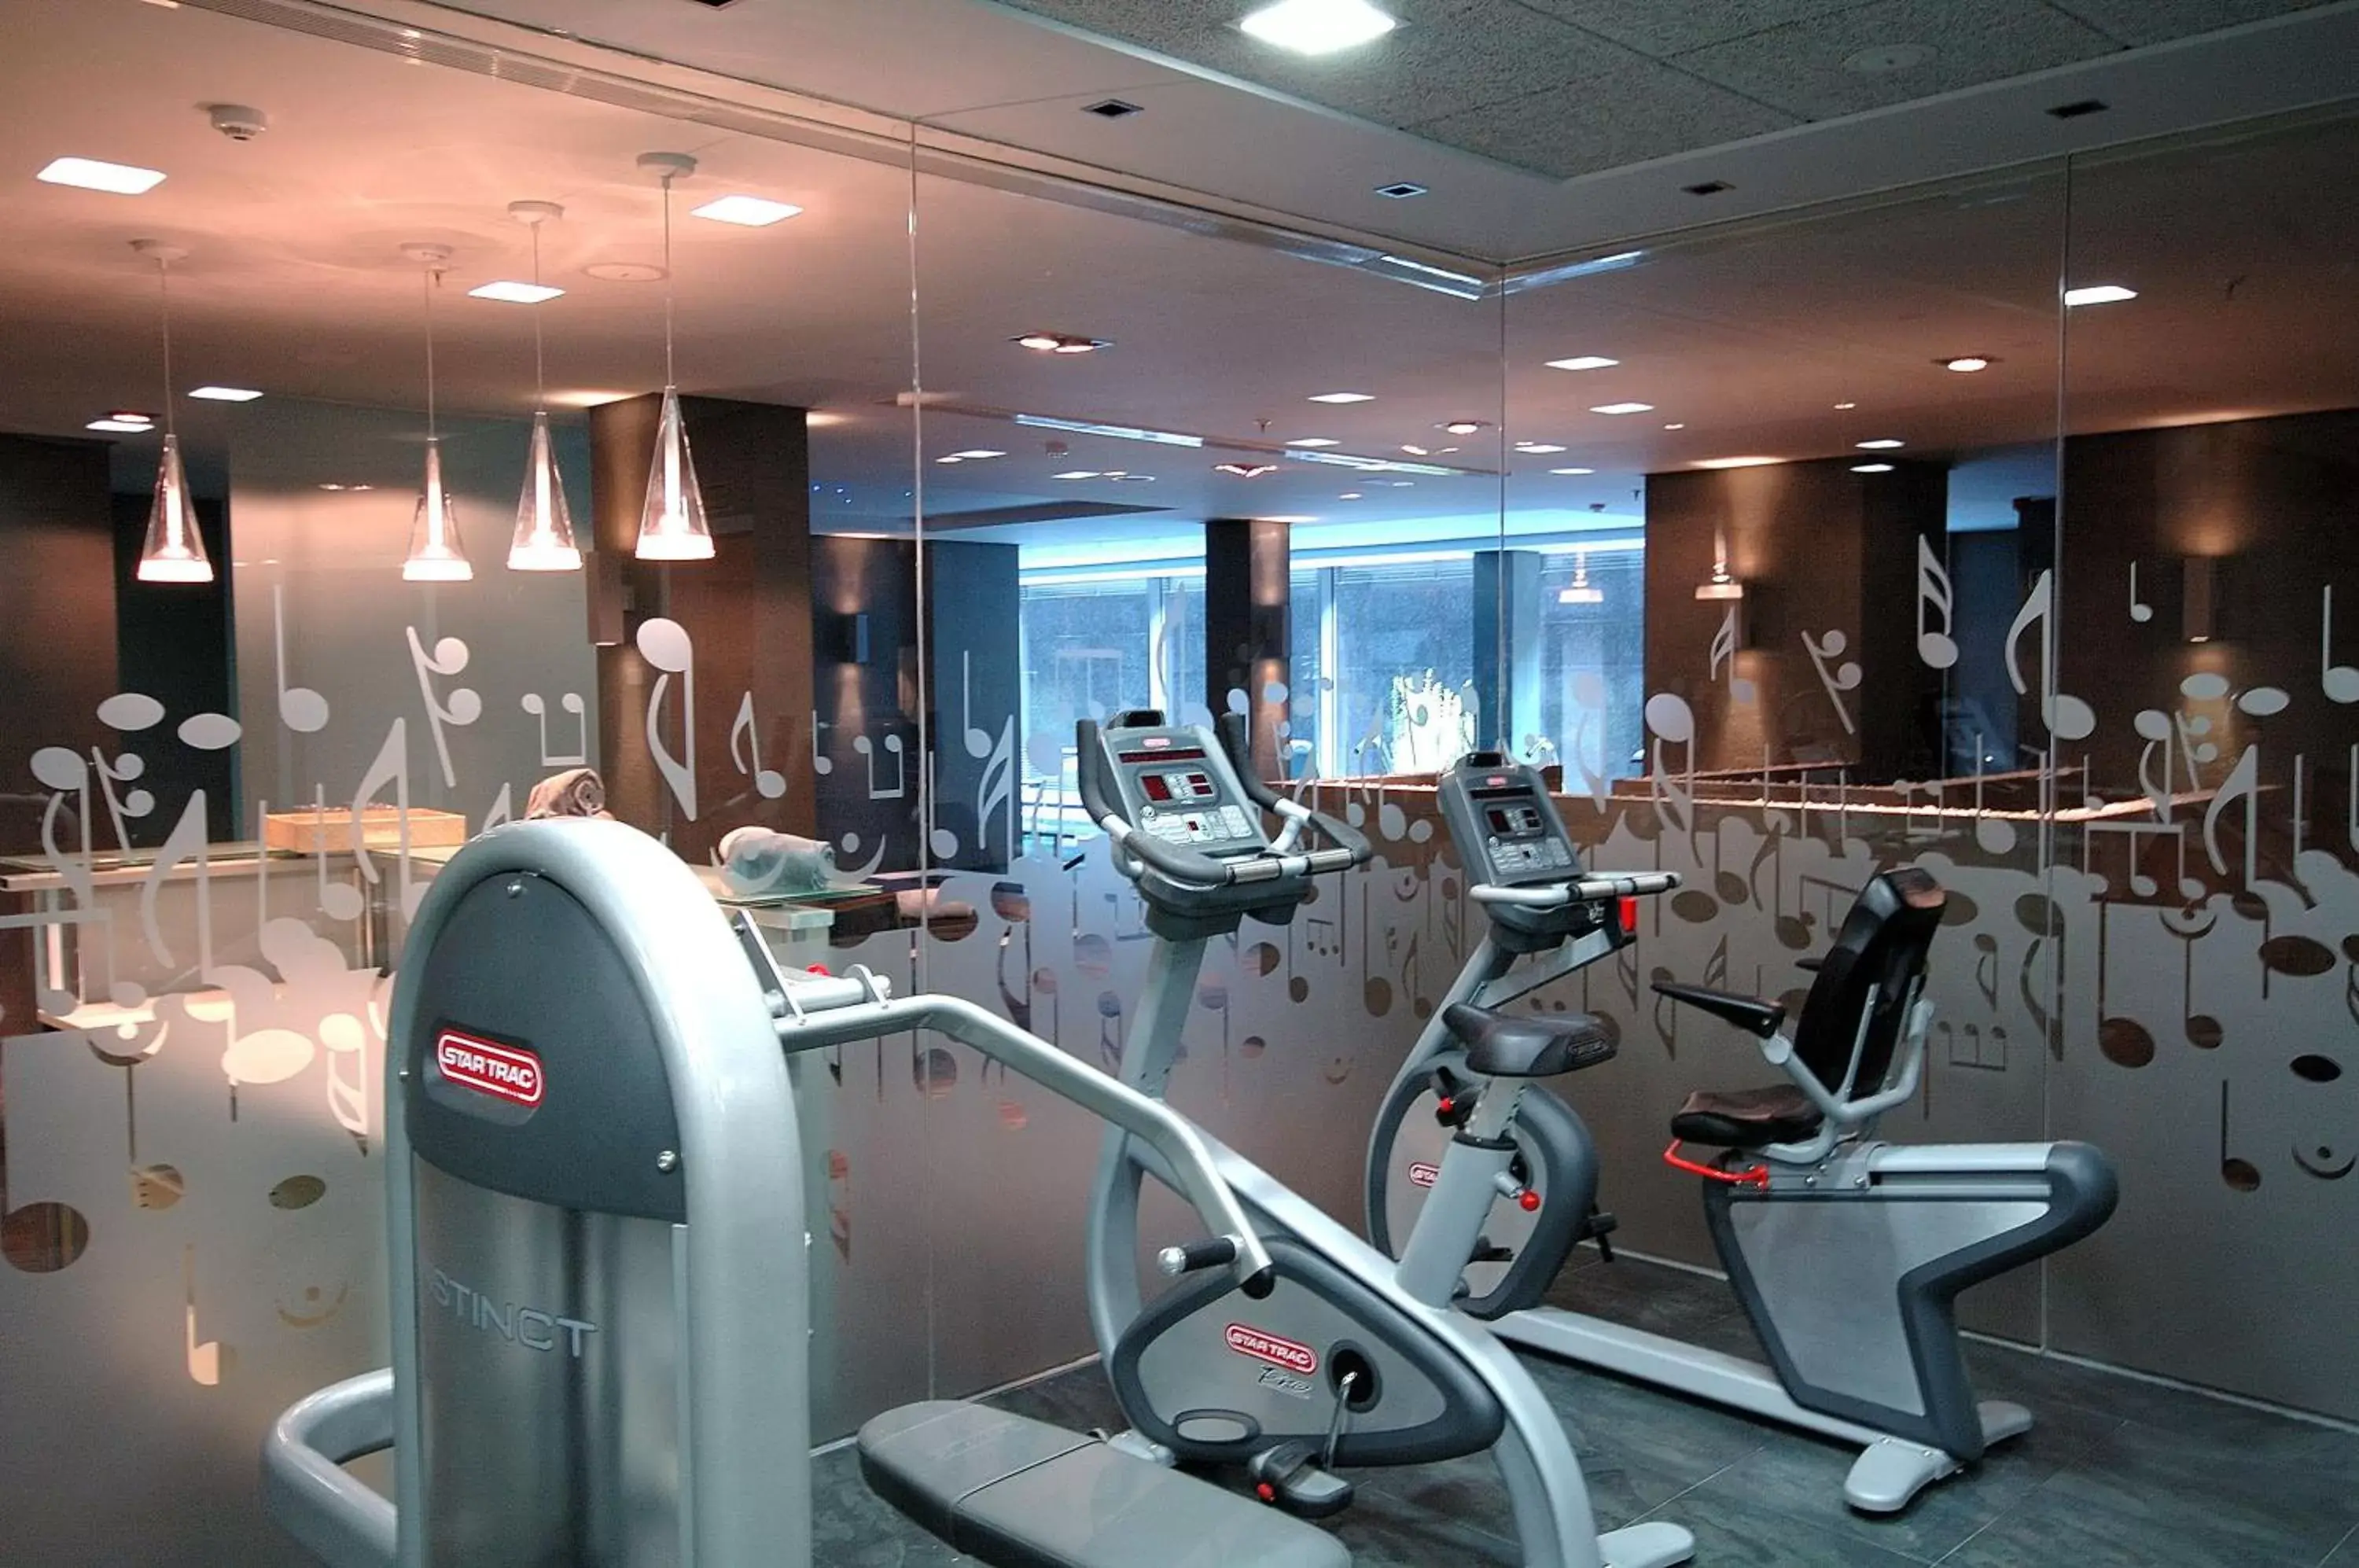 Fitness centre/facilities, Fitness Center/Facilities in Primus Valencia